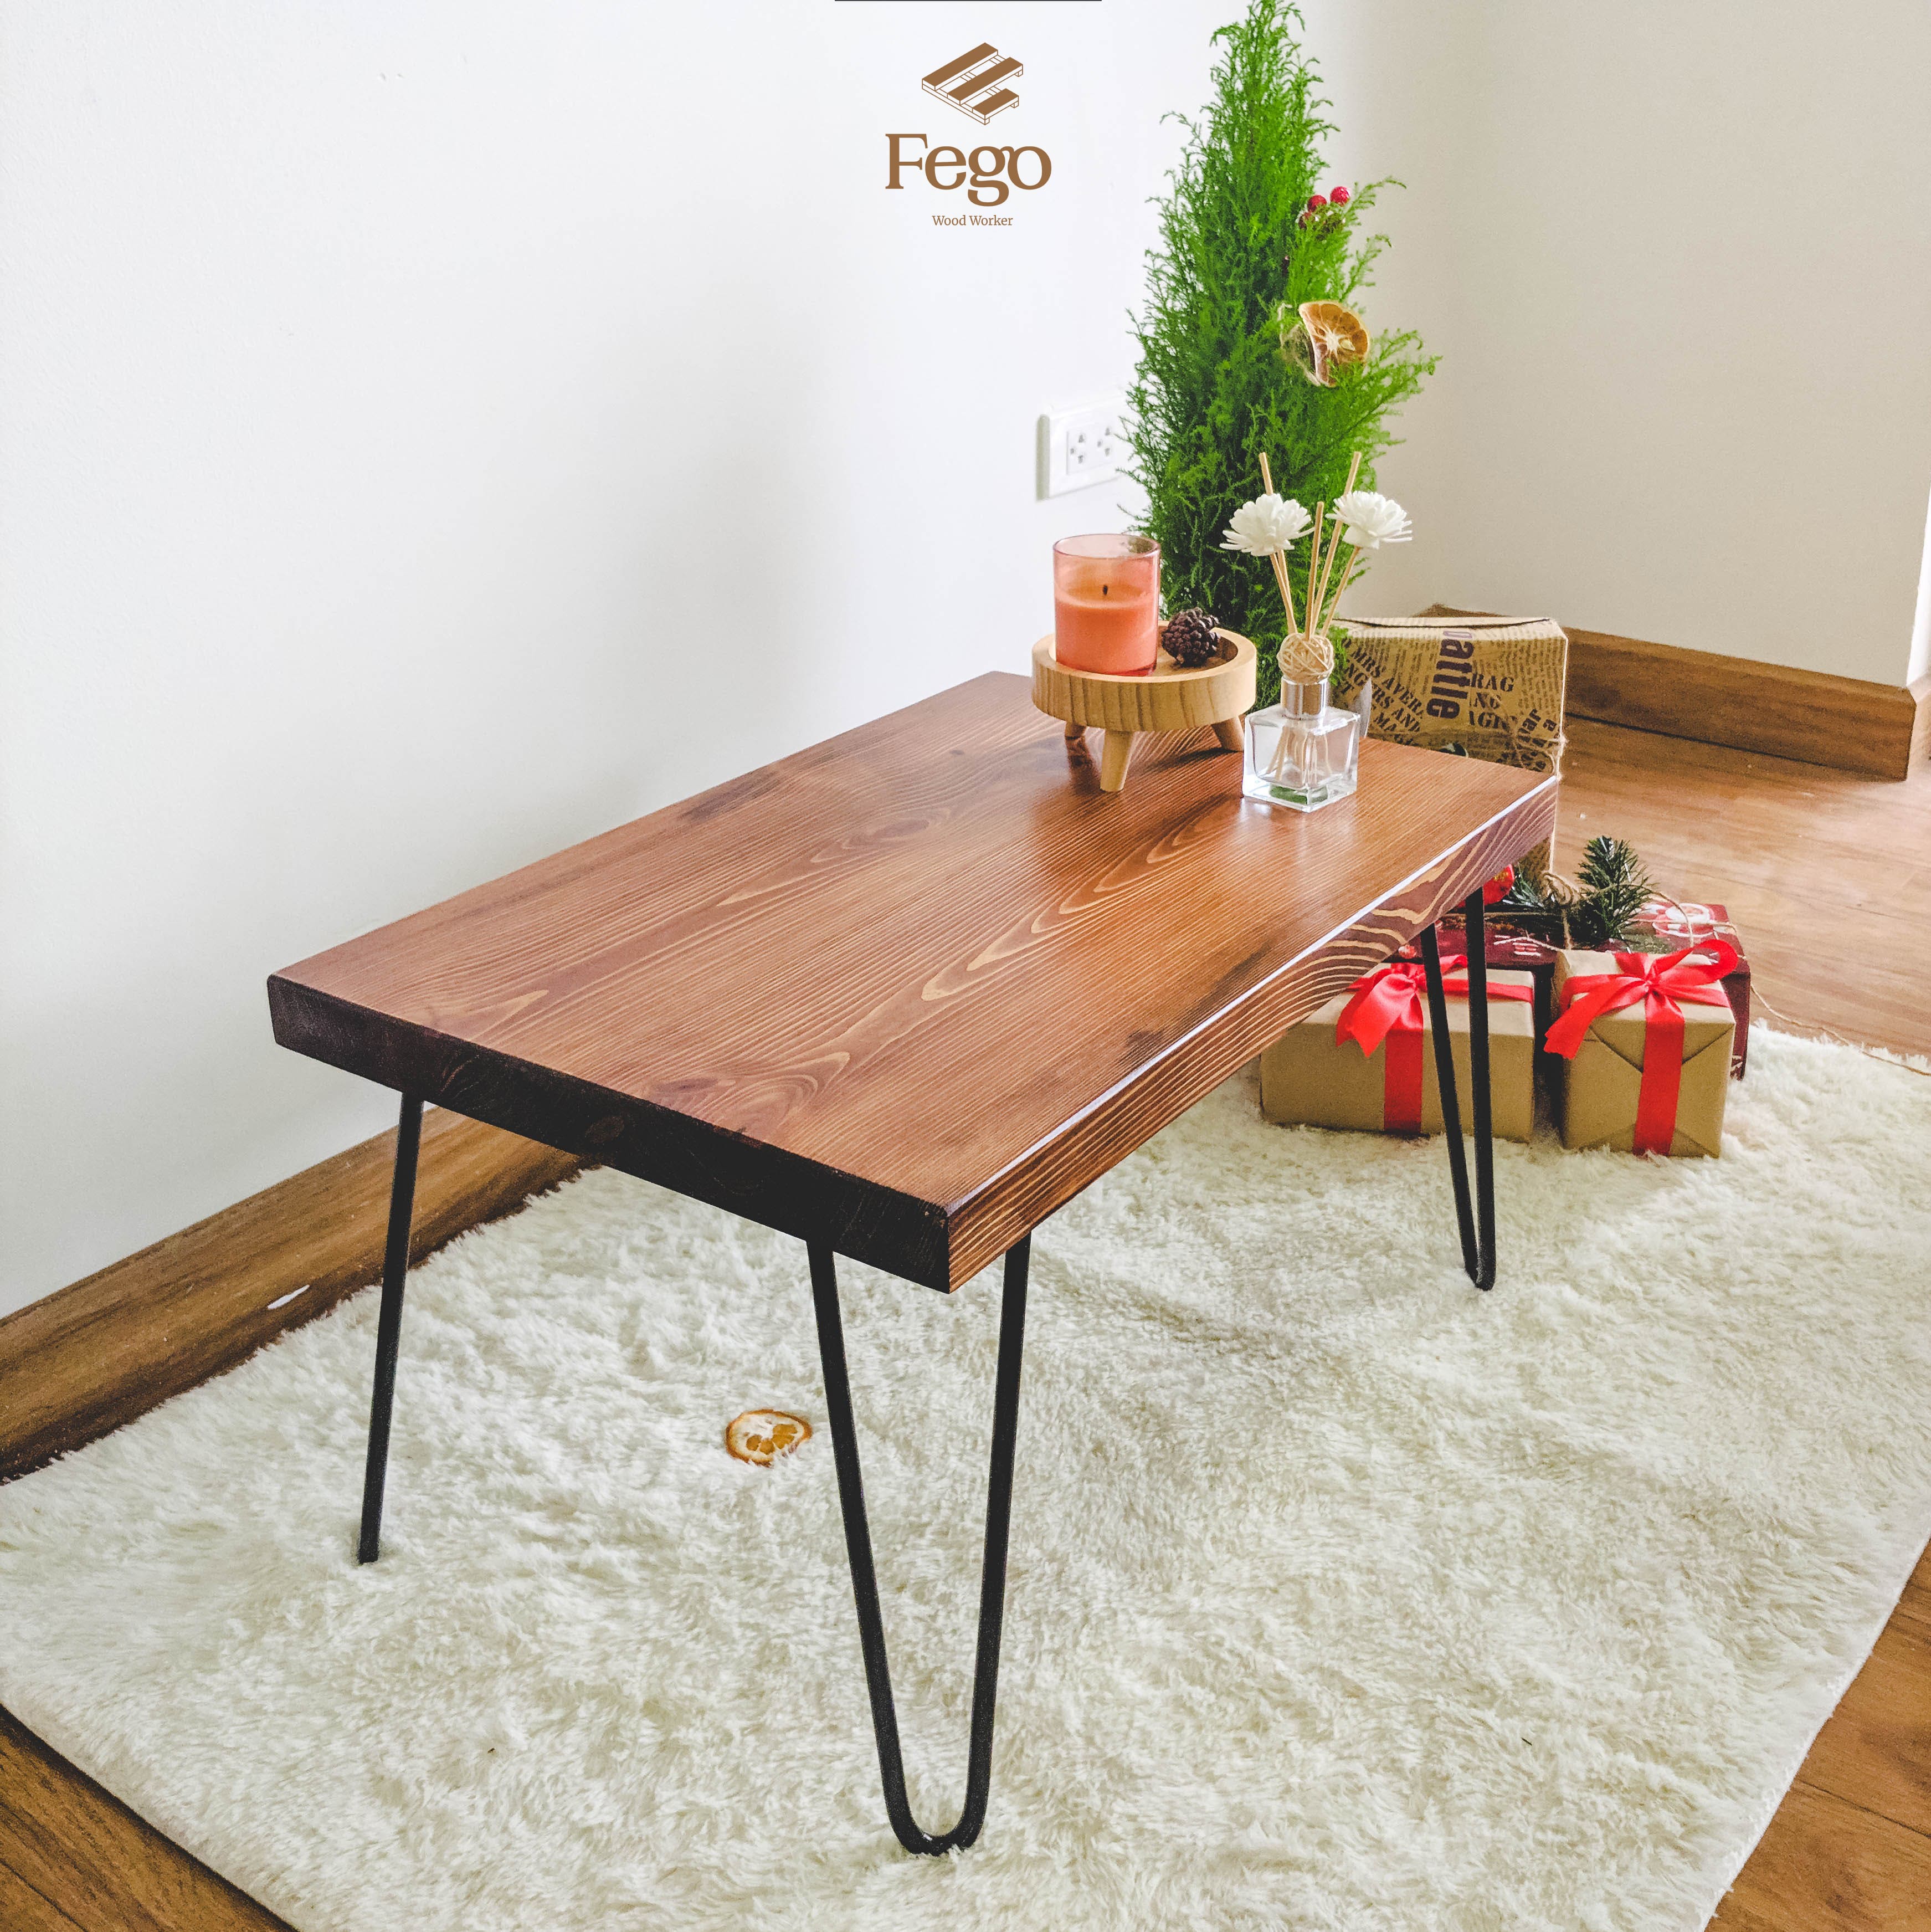 Bàn trà chữ nhật ngồi bệt FEGO bằng gỗ thông tự nhiên, chân sắt hairpin cao 35cm nội thất phòng khách